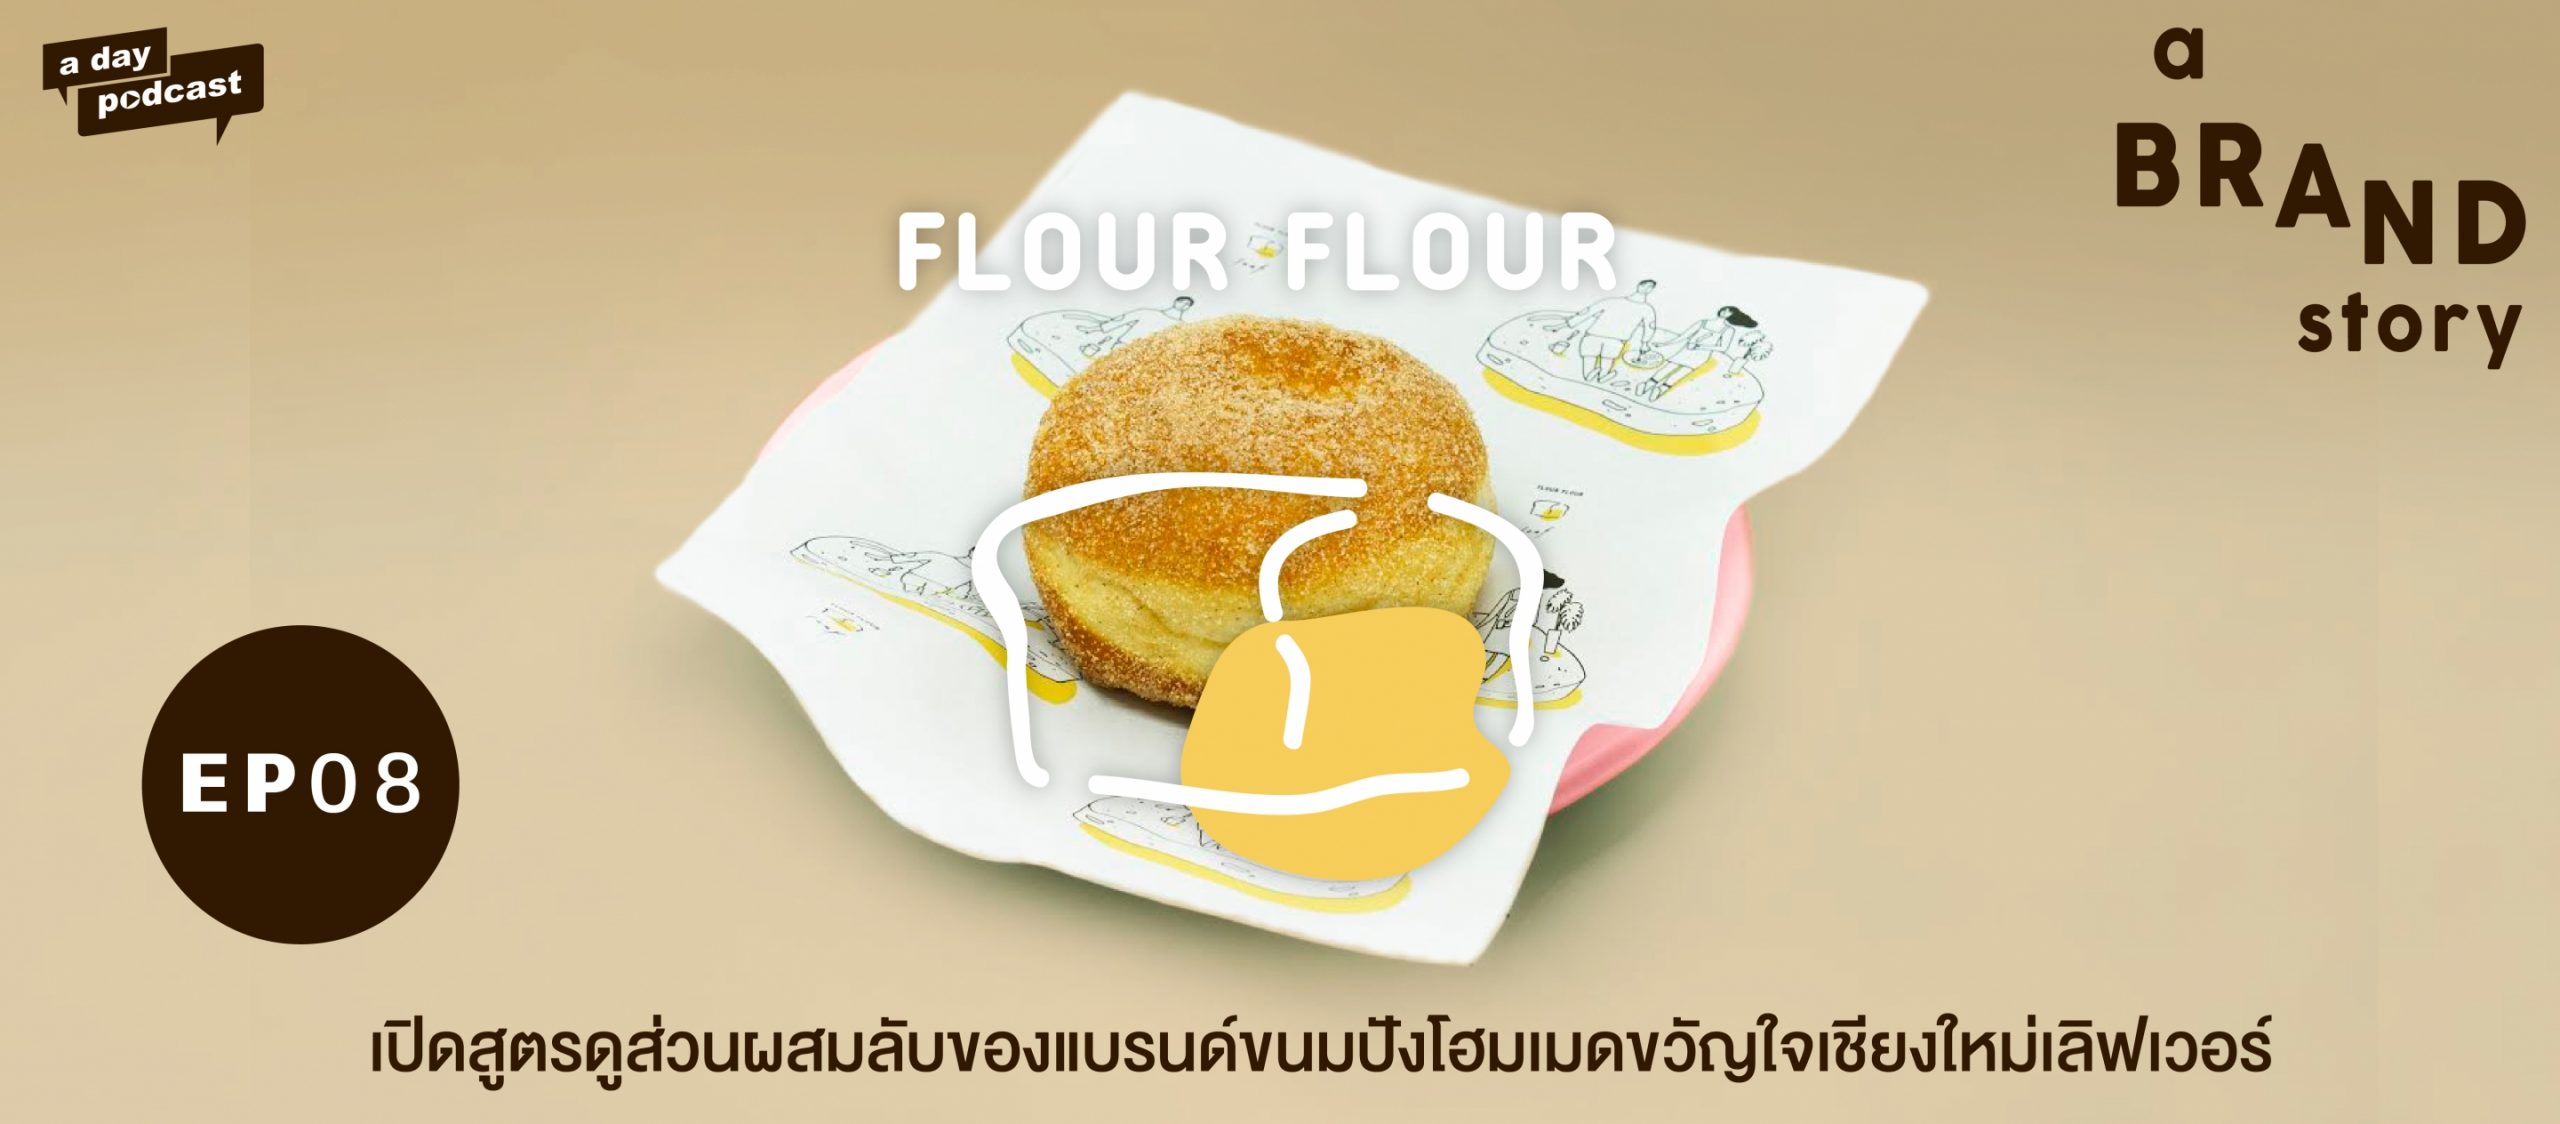 a BRAND story EP.08 เปิดสูตรดูส่วนผสมลับของแบรนด์ขนมปังโฮมเมดขวัญใจเชียงใหม่เลิฟเวอร์ | Flour Flour